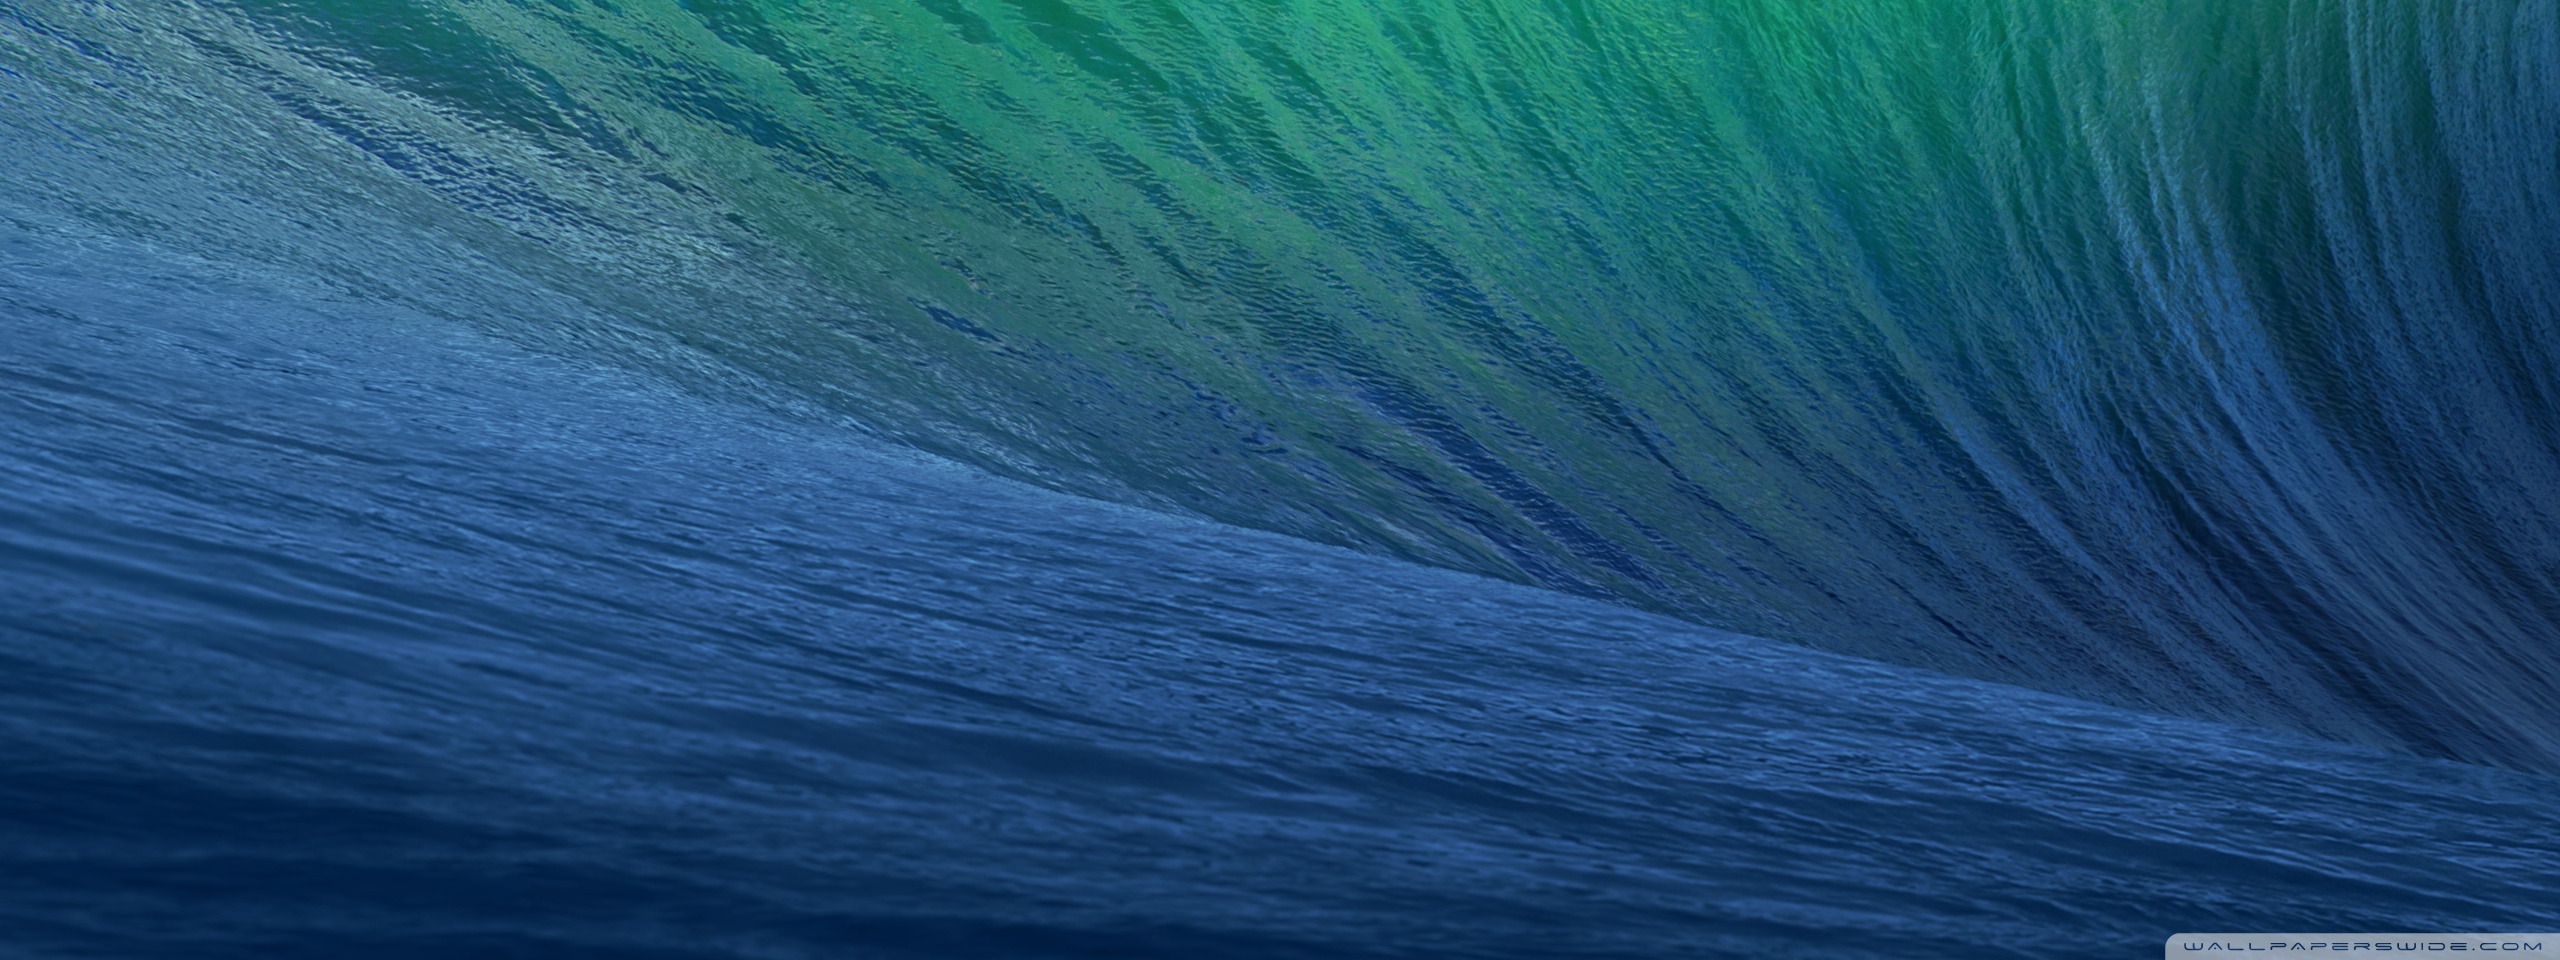 Apple Mac Os X Mavericks Hd Desktop Wallpaper Widescreen High